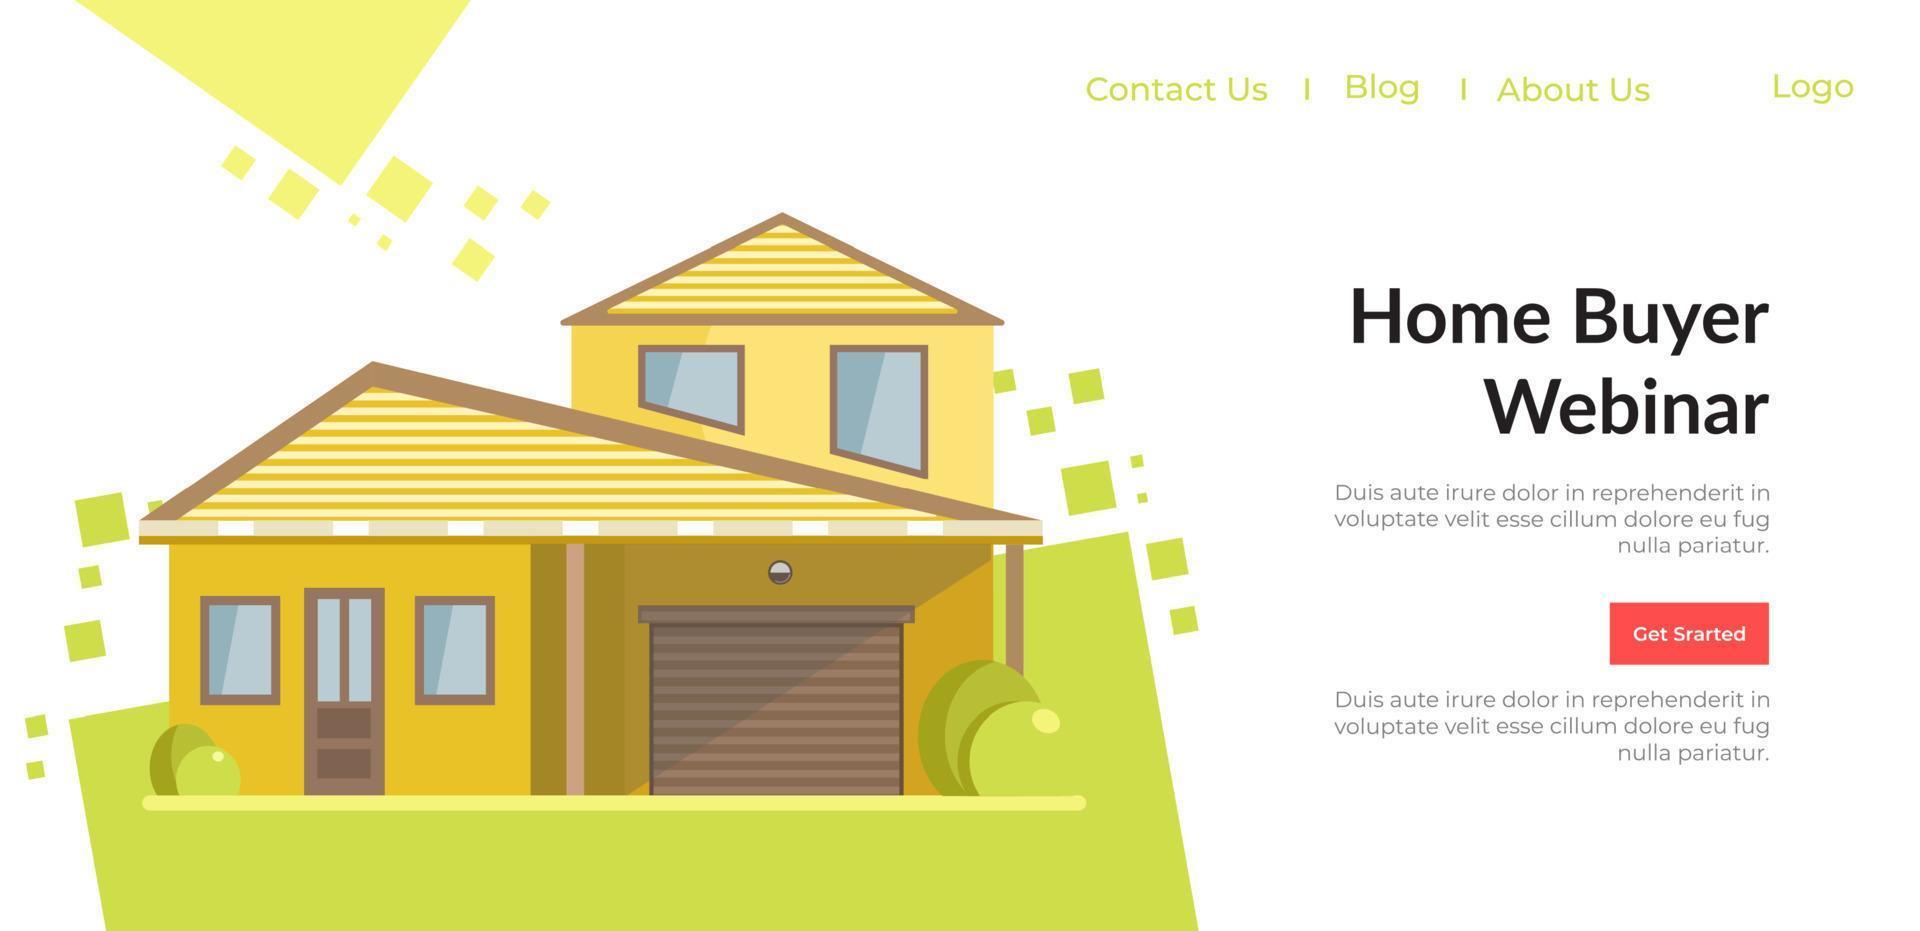 seminario web para compradores de vivienda, información para el sitio de los clientes vector